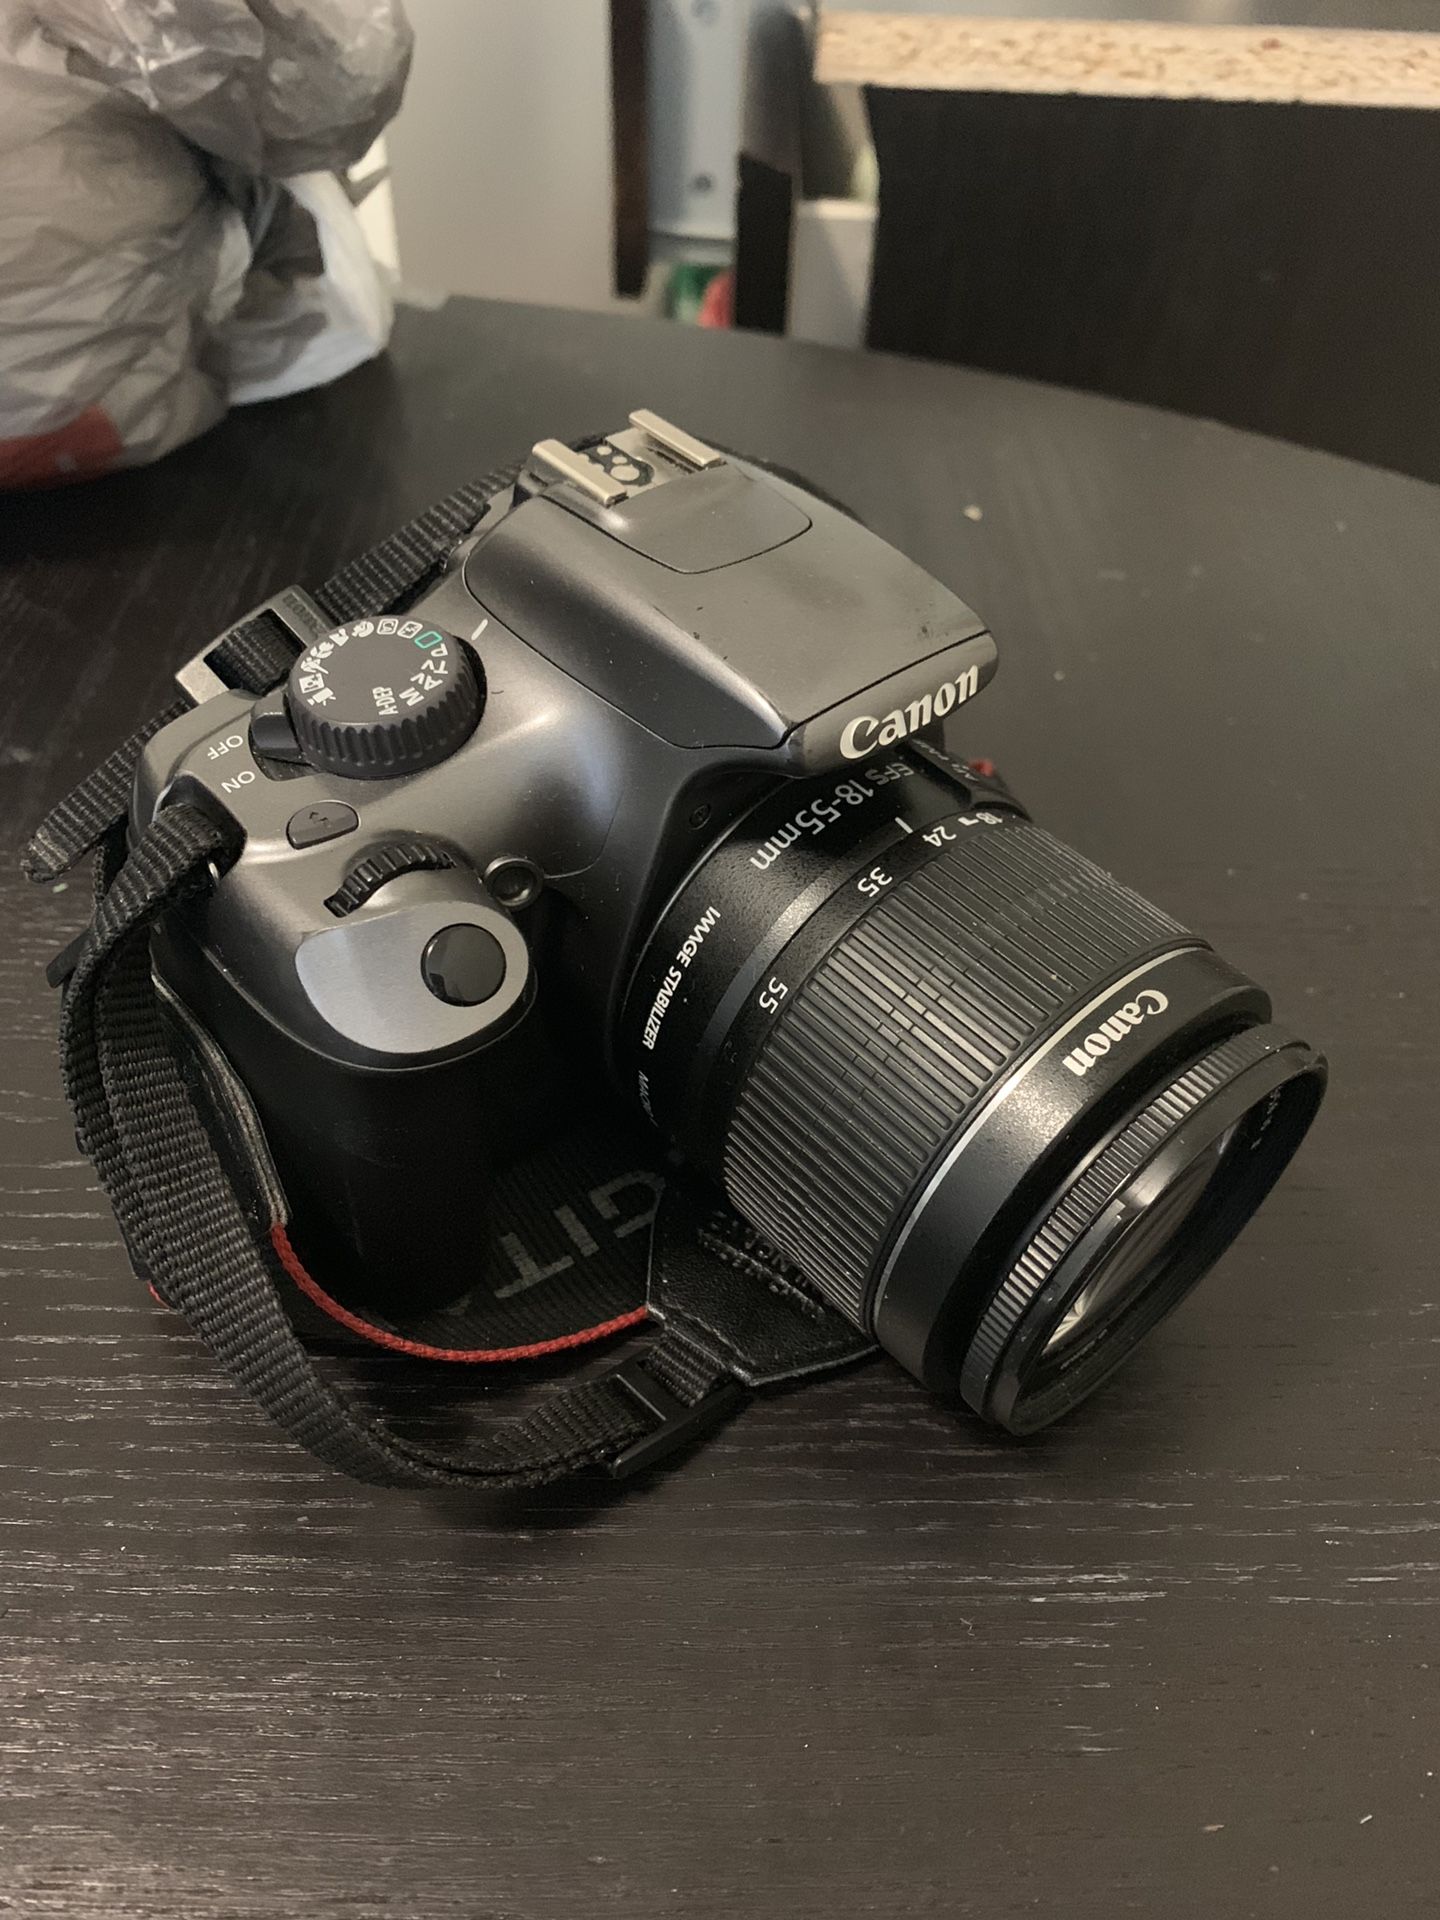 Perfectly fine canon EOS Rebel DSLR camera $$400